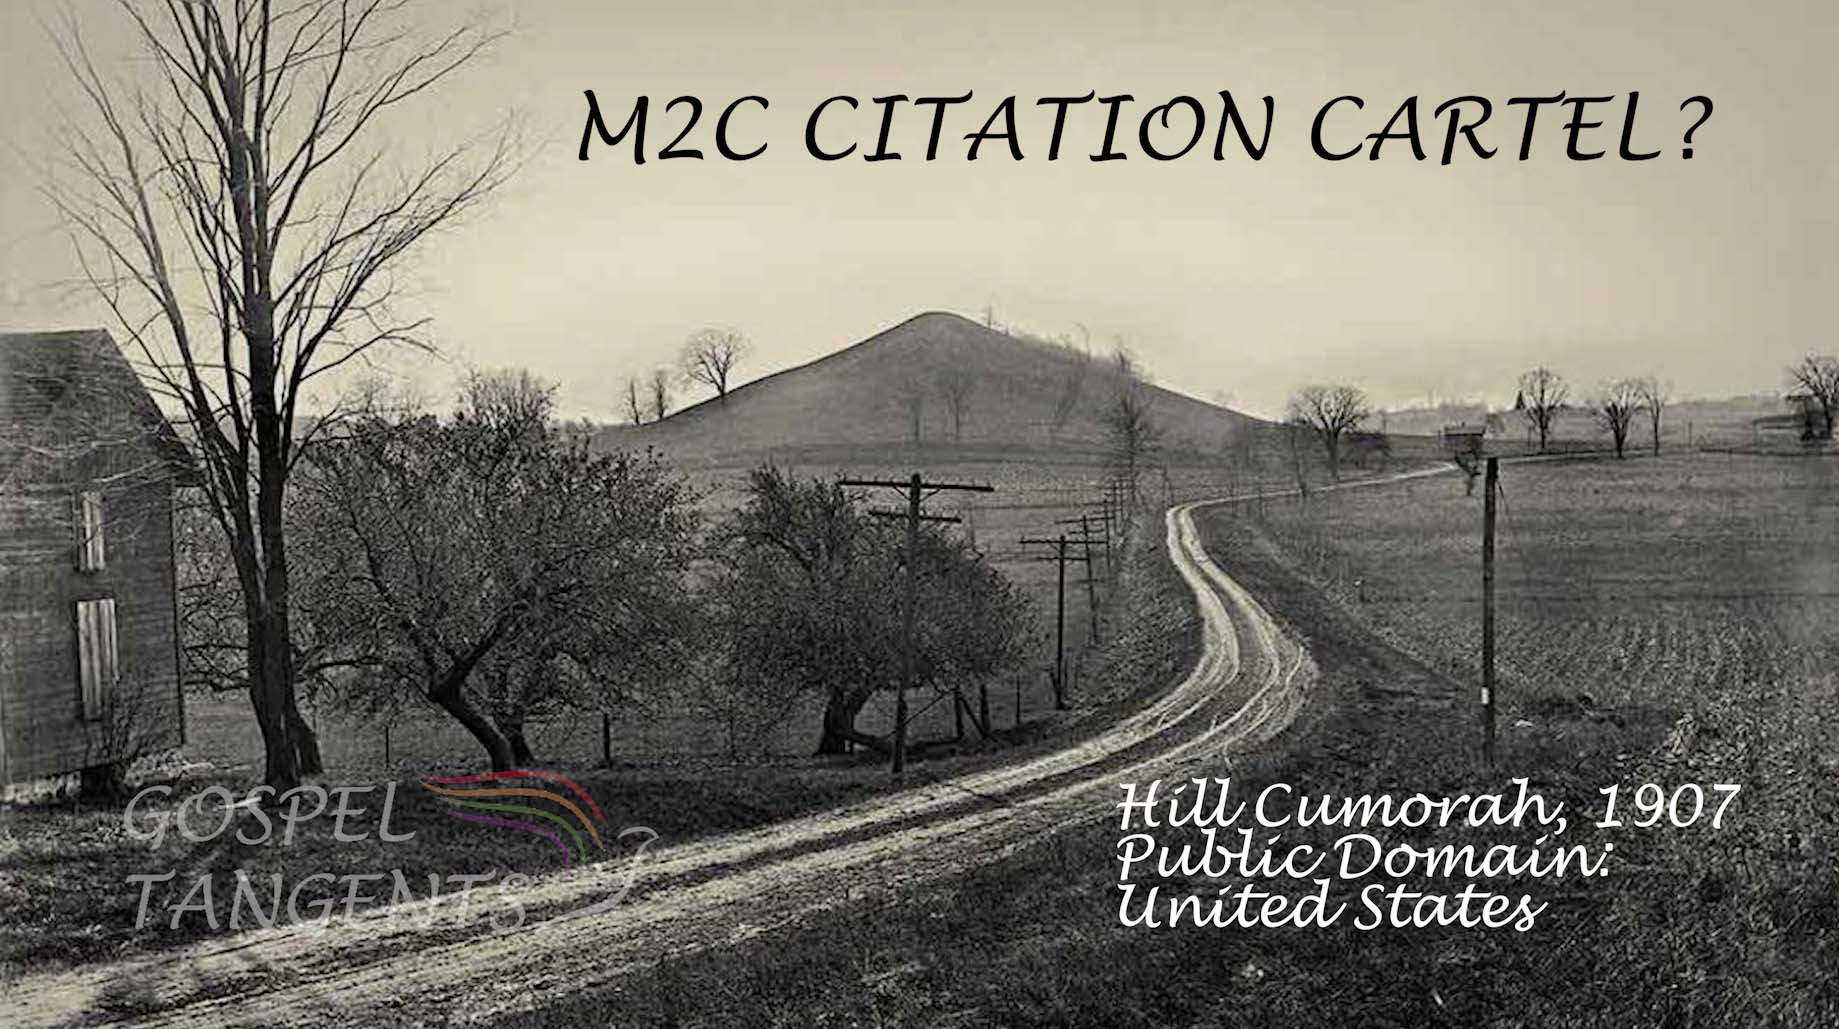 M2C Citation Cartel - M2C Citation Cartel (Part 3 of 11 Jonathan Neville) - Mormon History Podcast